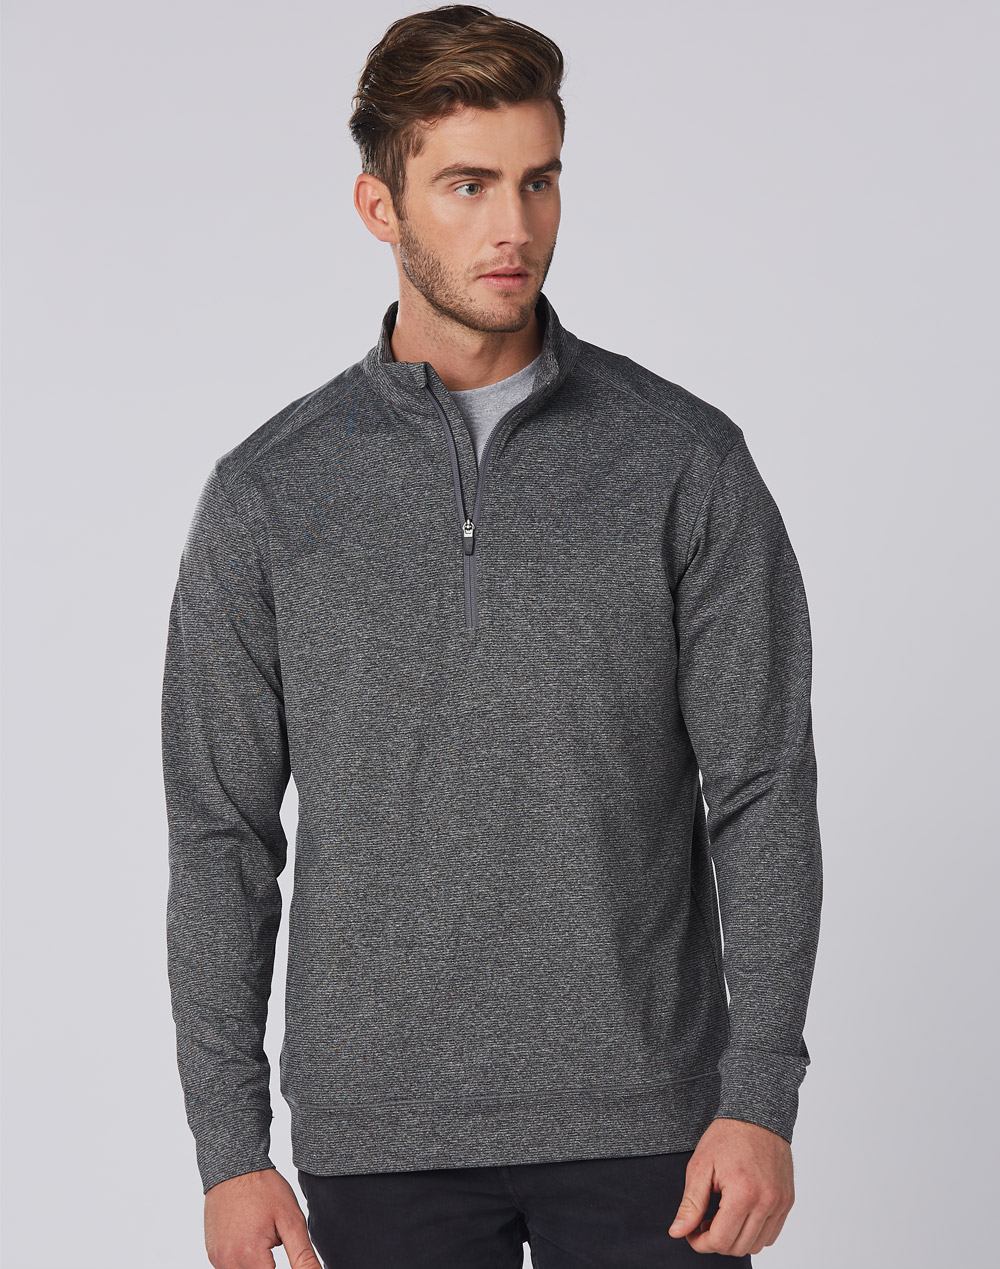 WS FL25-Mens Ultimate Half Zip Long Sleeve Sweater